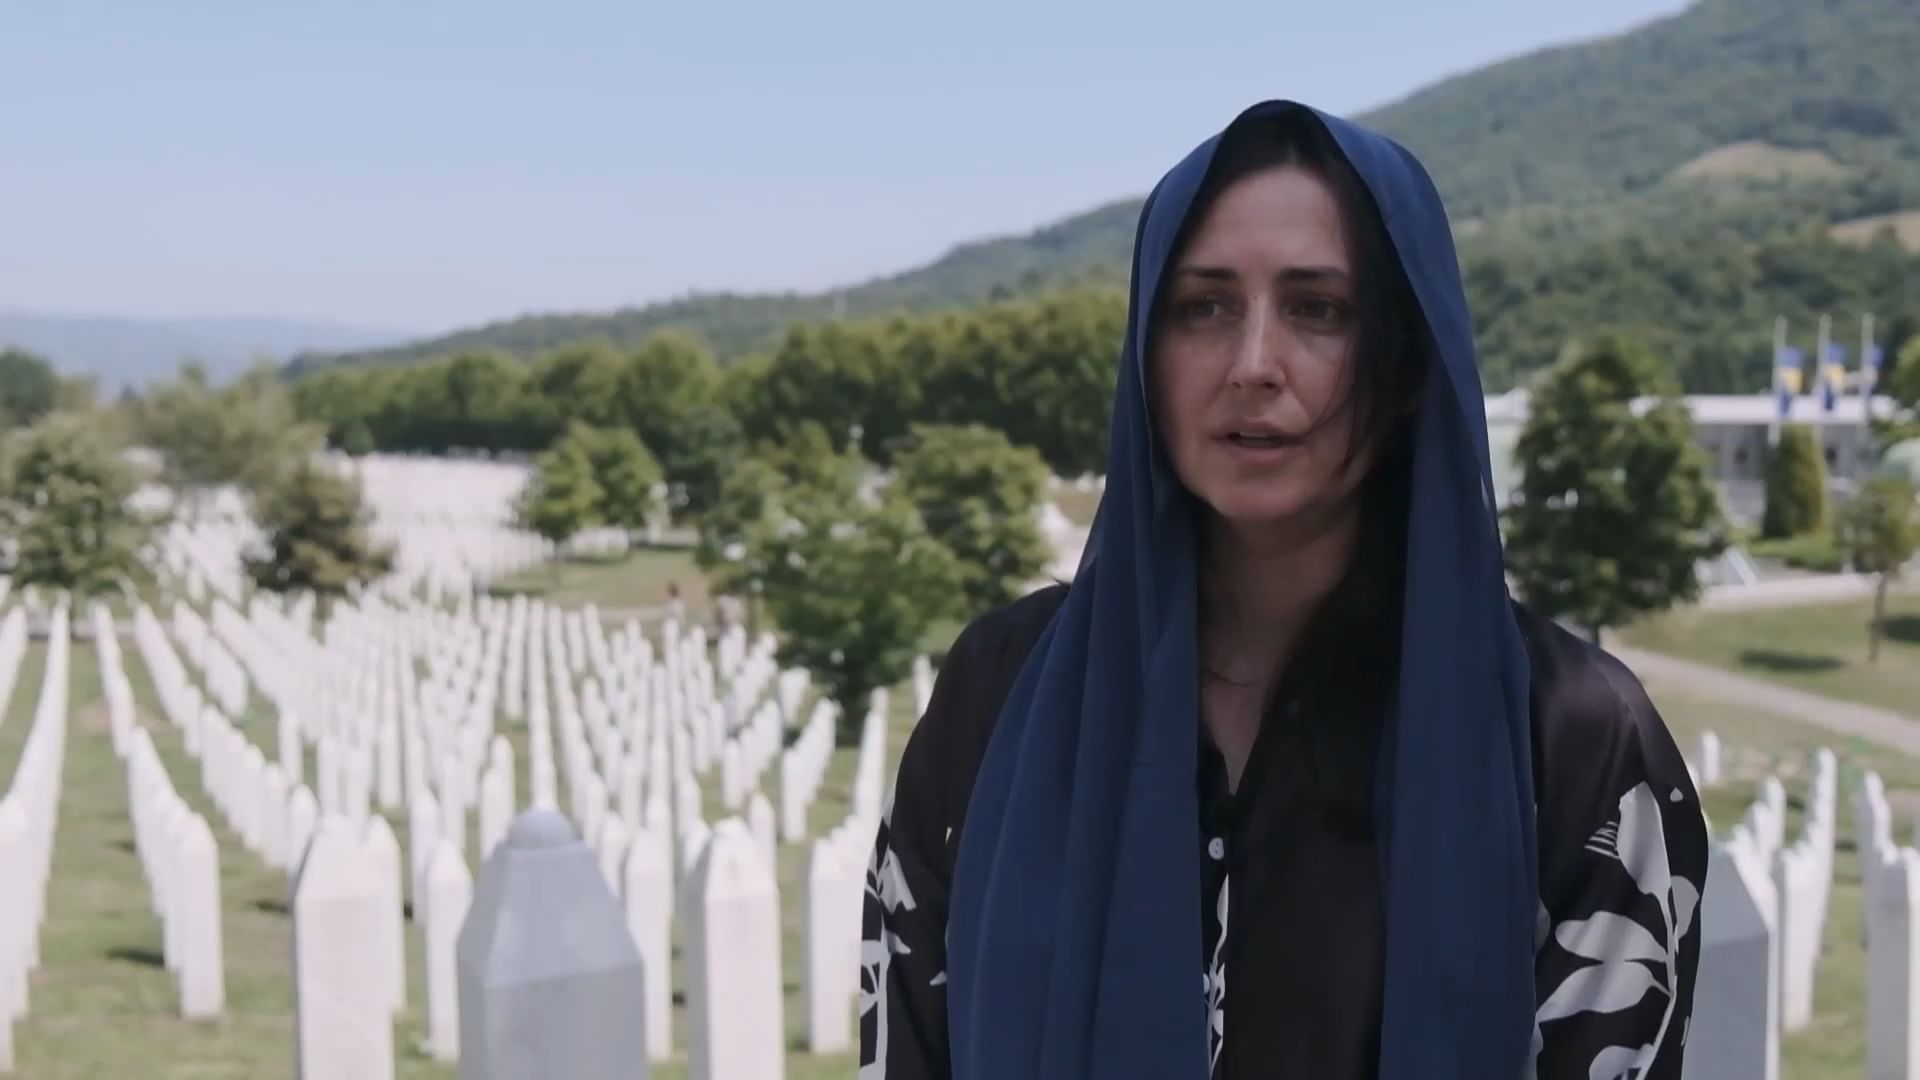 Bosnie : le génocide de Srebrenica en question - Regarder le documentaire complet | ARTE